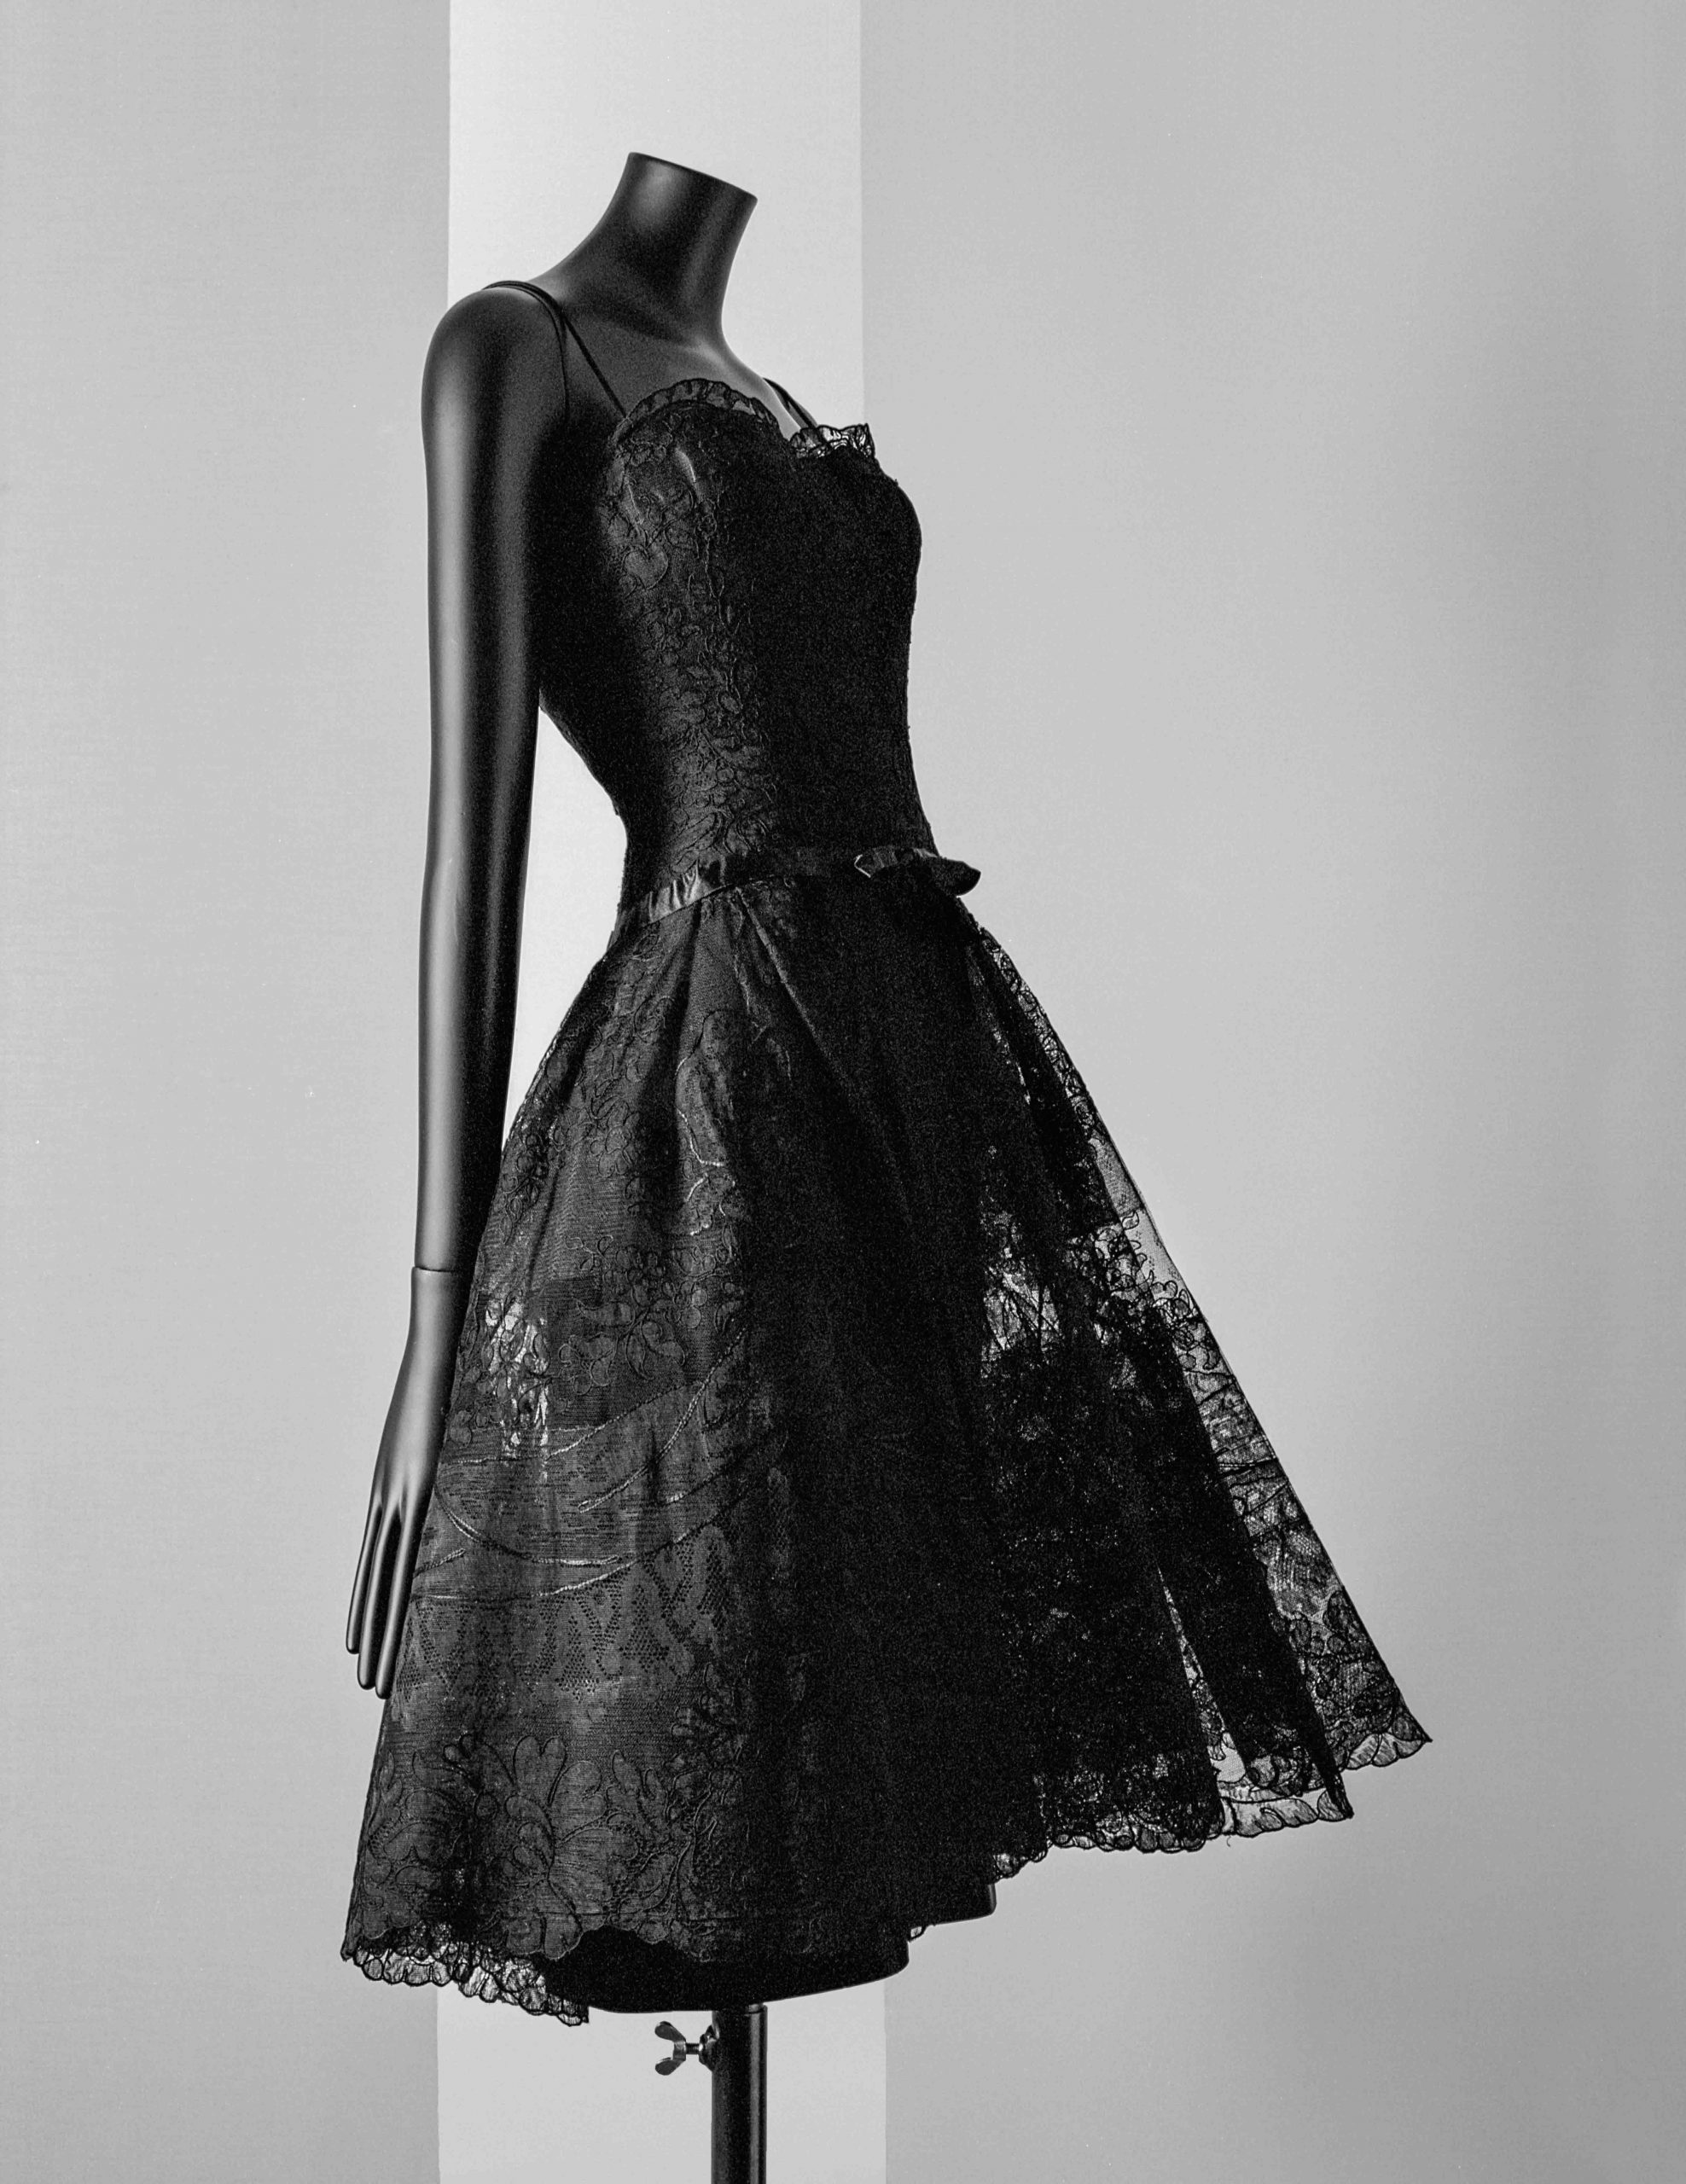 Coco Chanel, lezioni di moda: dal tubino nero alla borsa 2.55